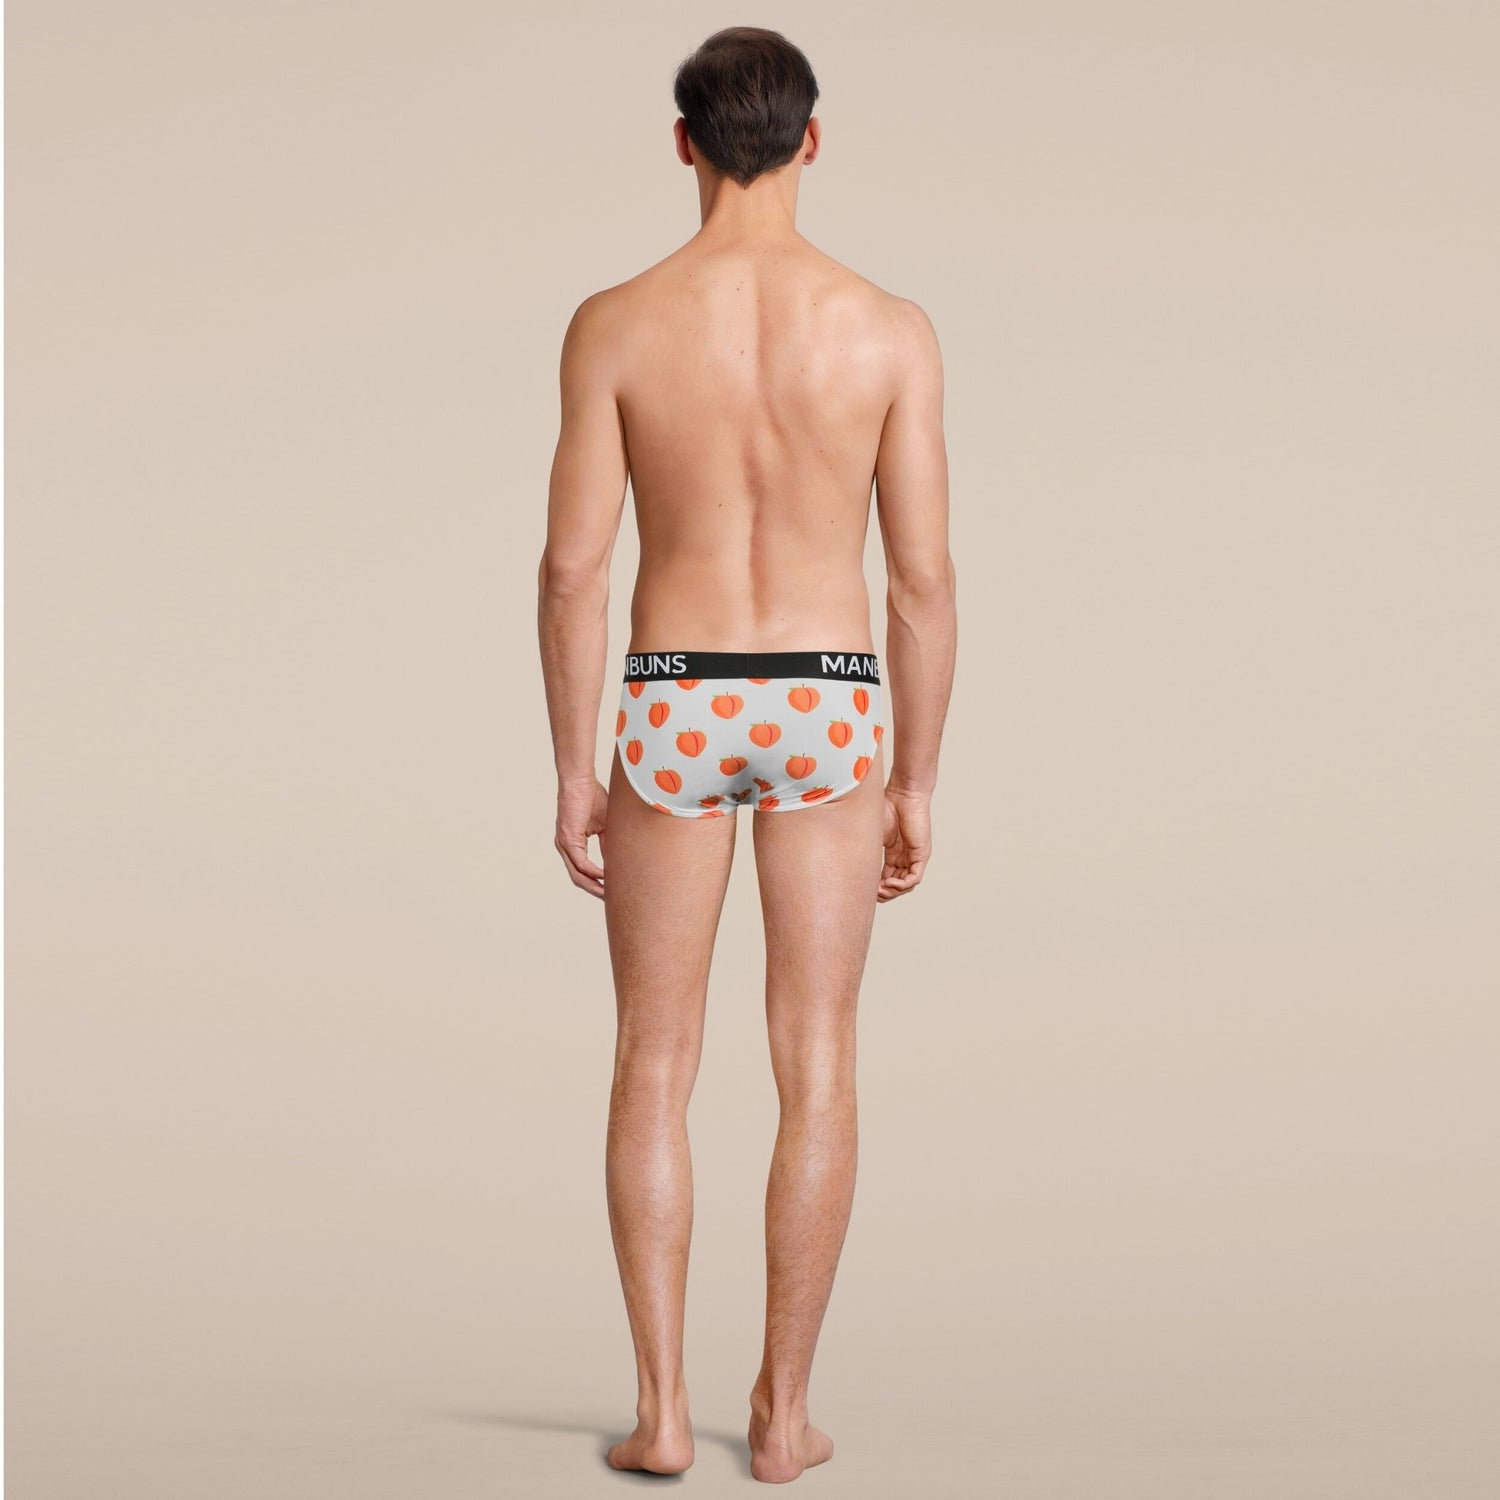 Peach Print Briefs Underwear – MANBUNS